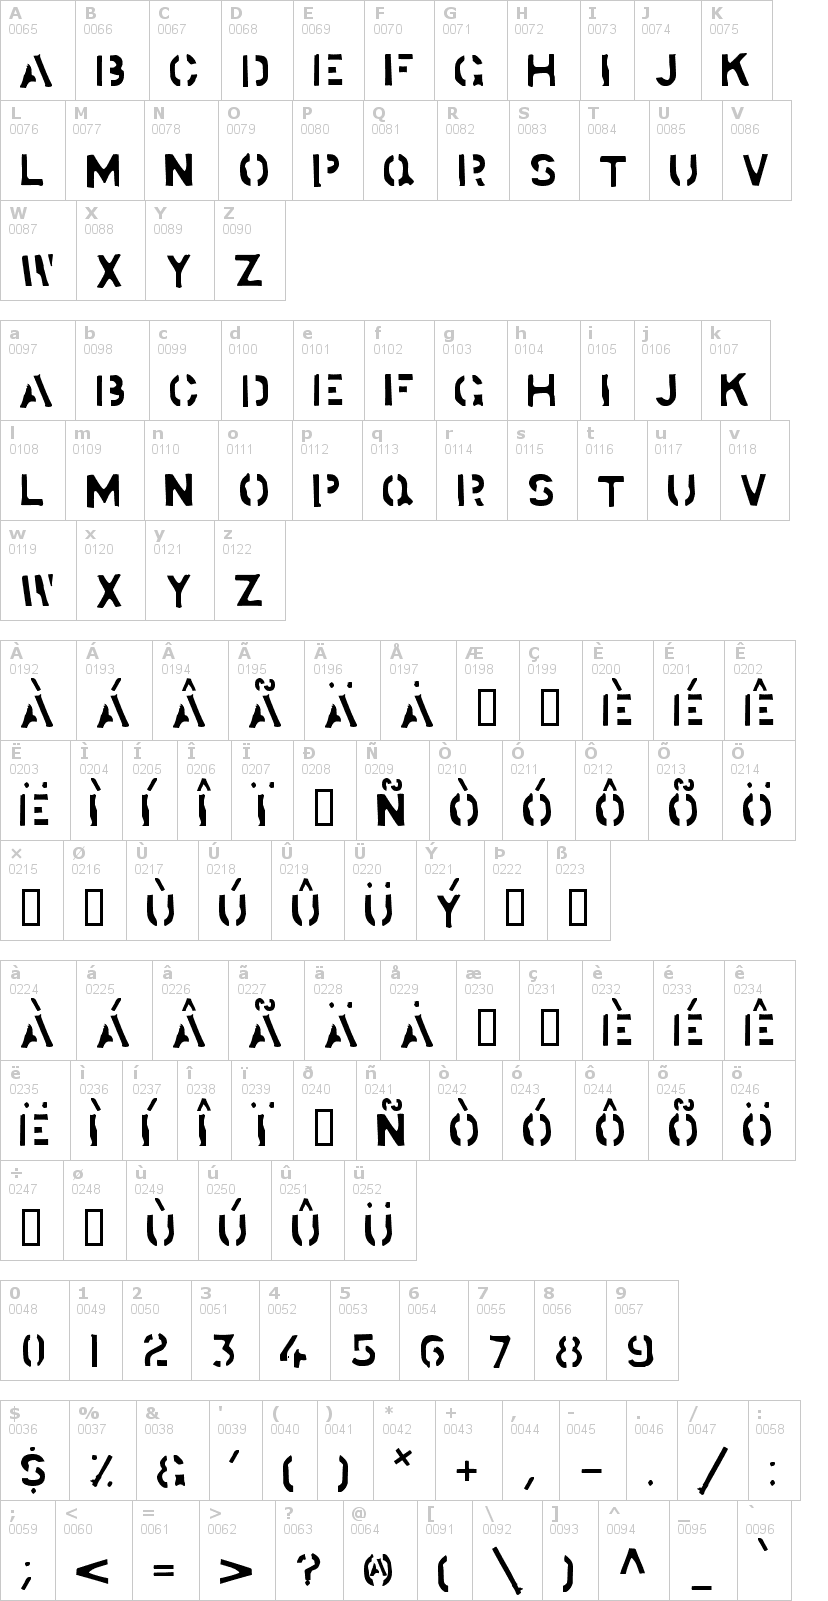 Lettere dell'alfabeto del font stockstill con le quali è possibile realizzare adesivi prespaziati